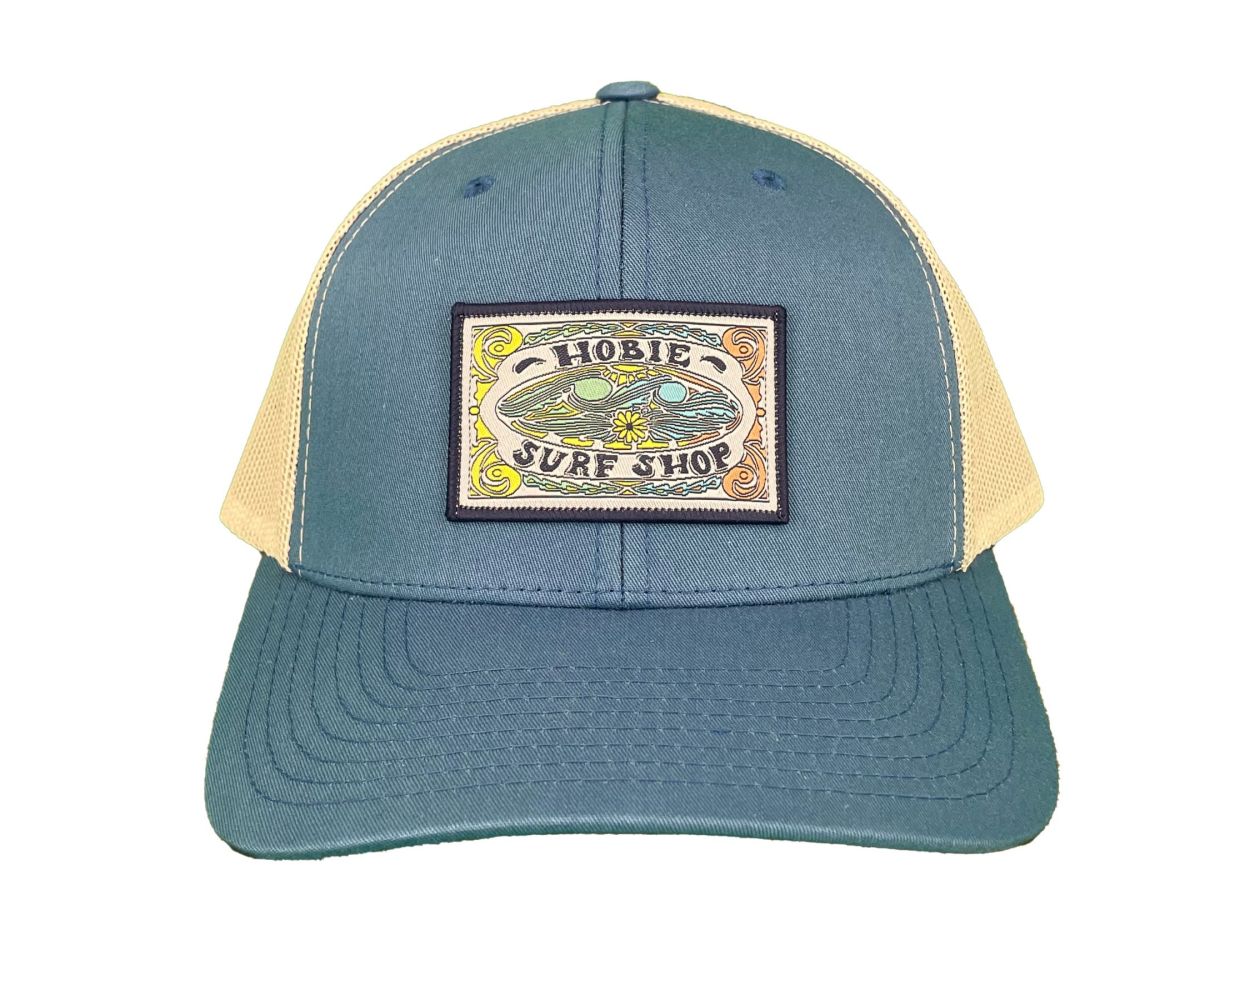 Hobie Surf Shop Trucker Hat